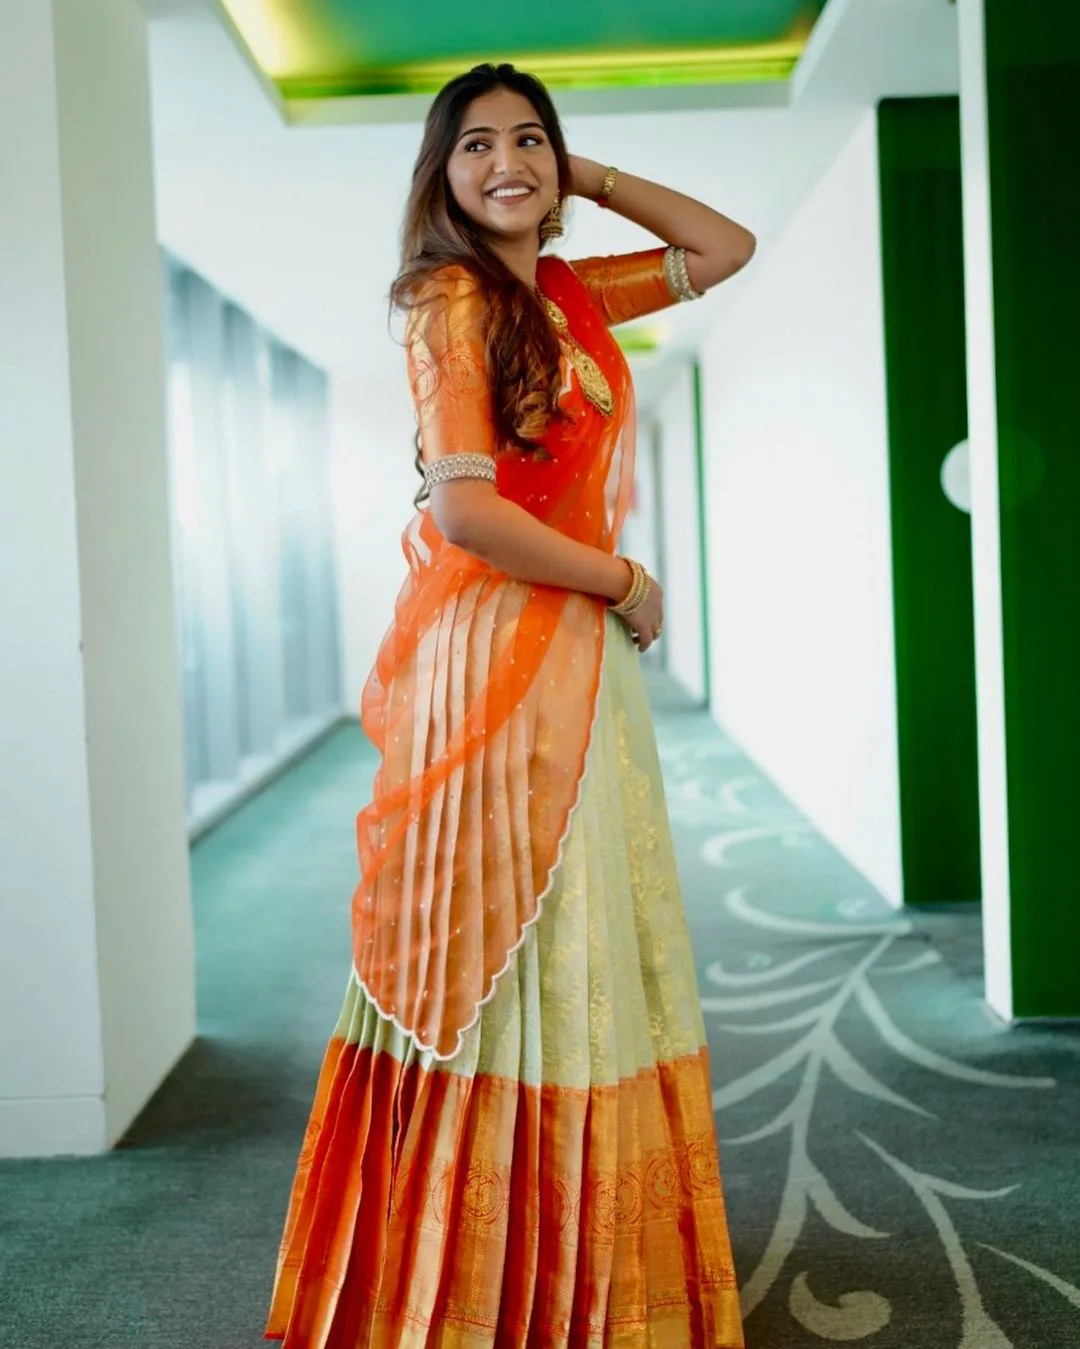 Pranavi Manukonda gorgeous looks in half saree pic6